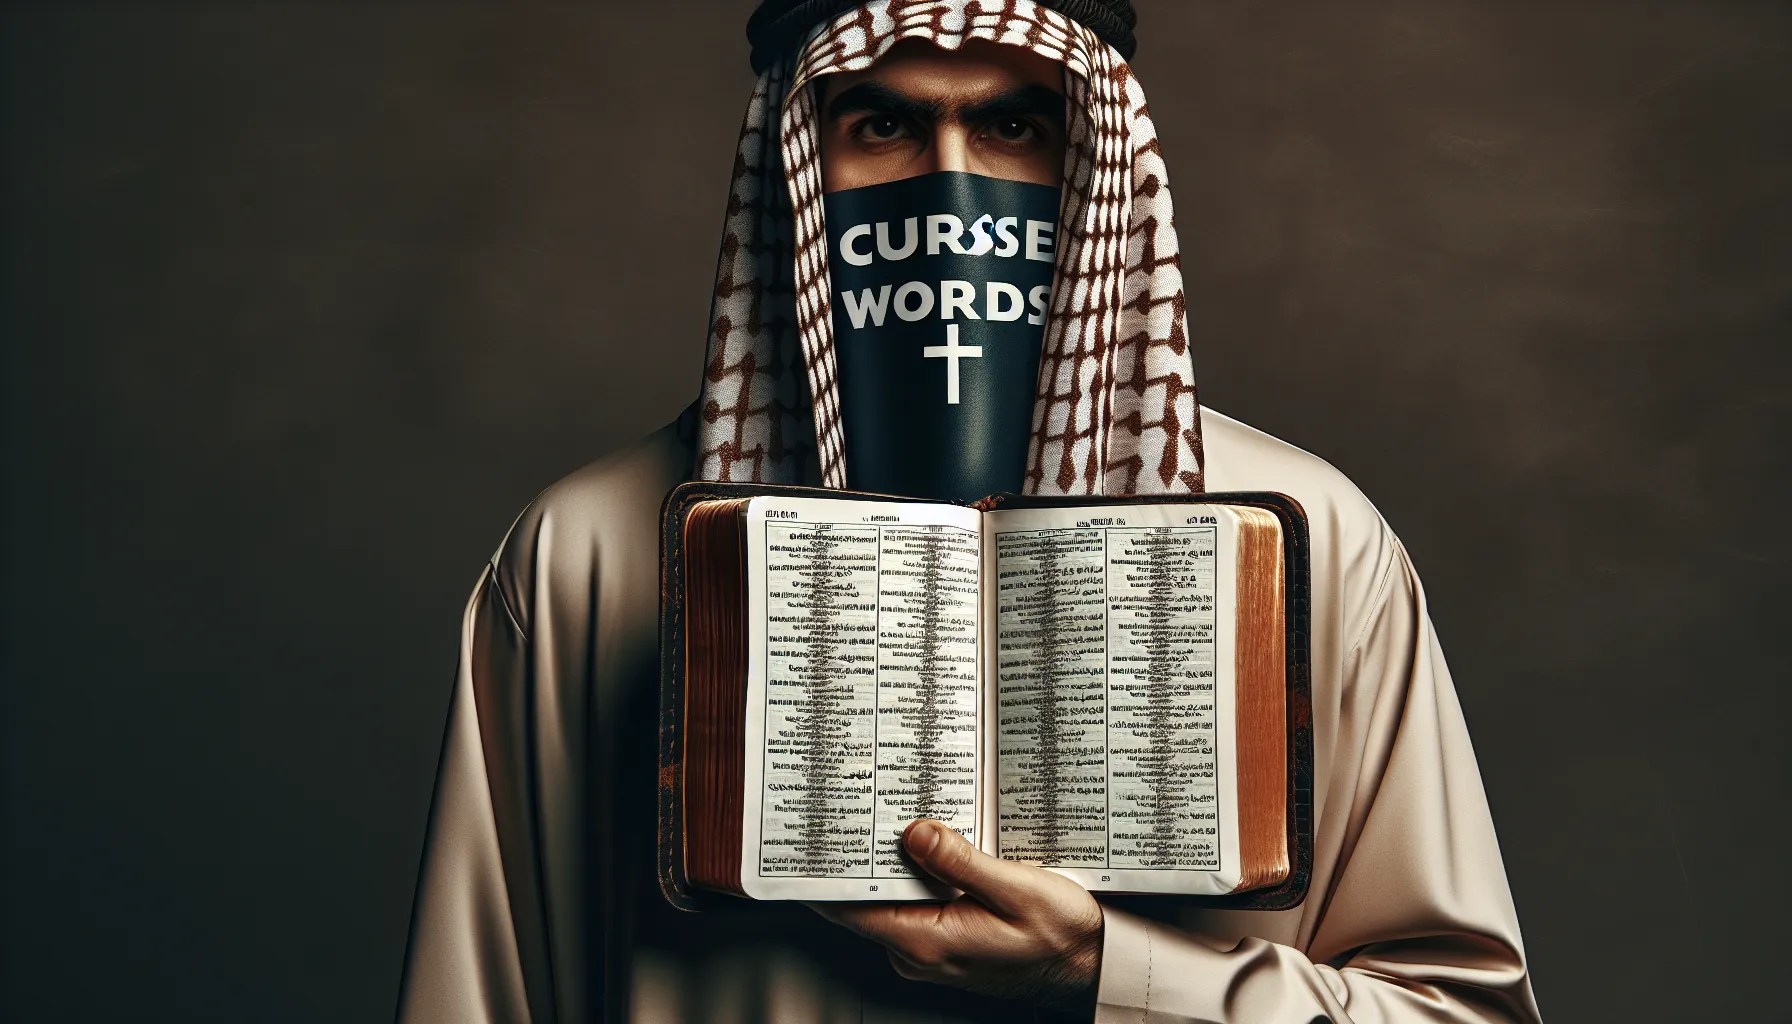 Un hombre con la boca tapada mientras la Biblia abre un capítulo sobre la importancia de evitar malas palabras y maldecir.